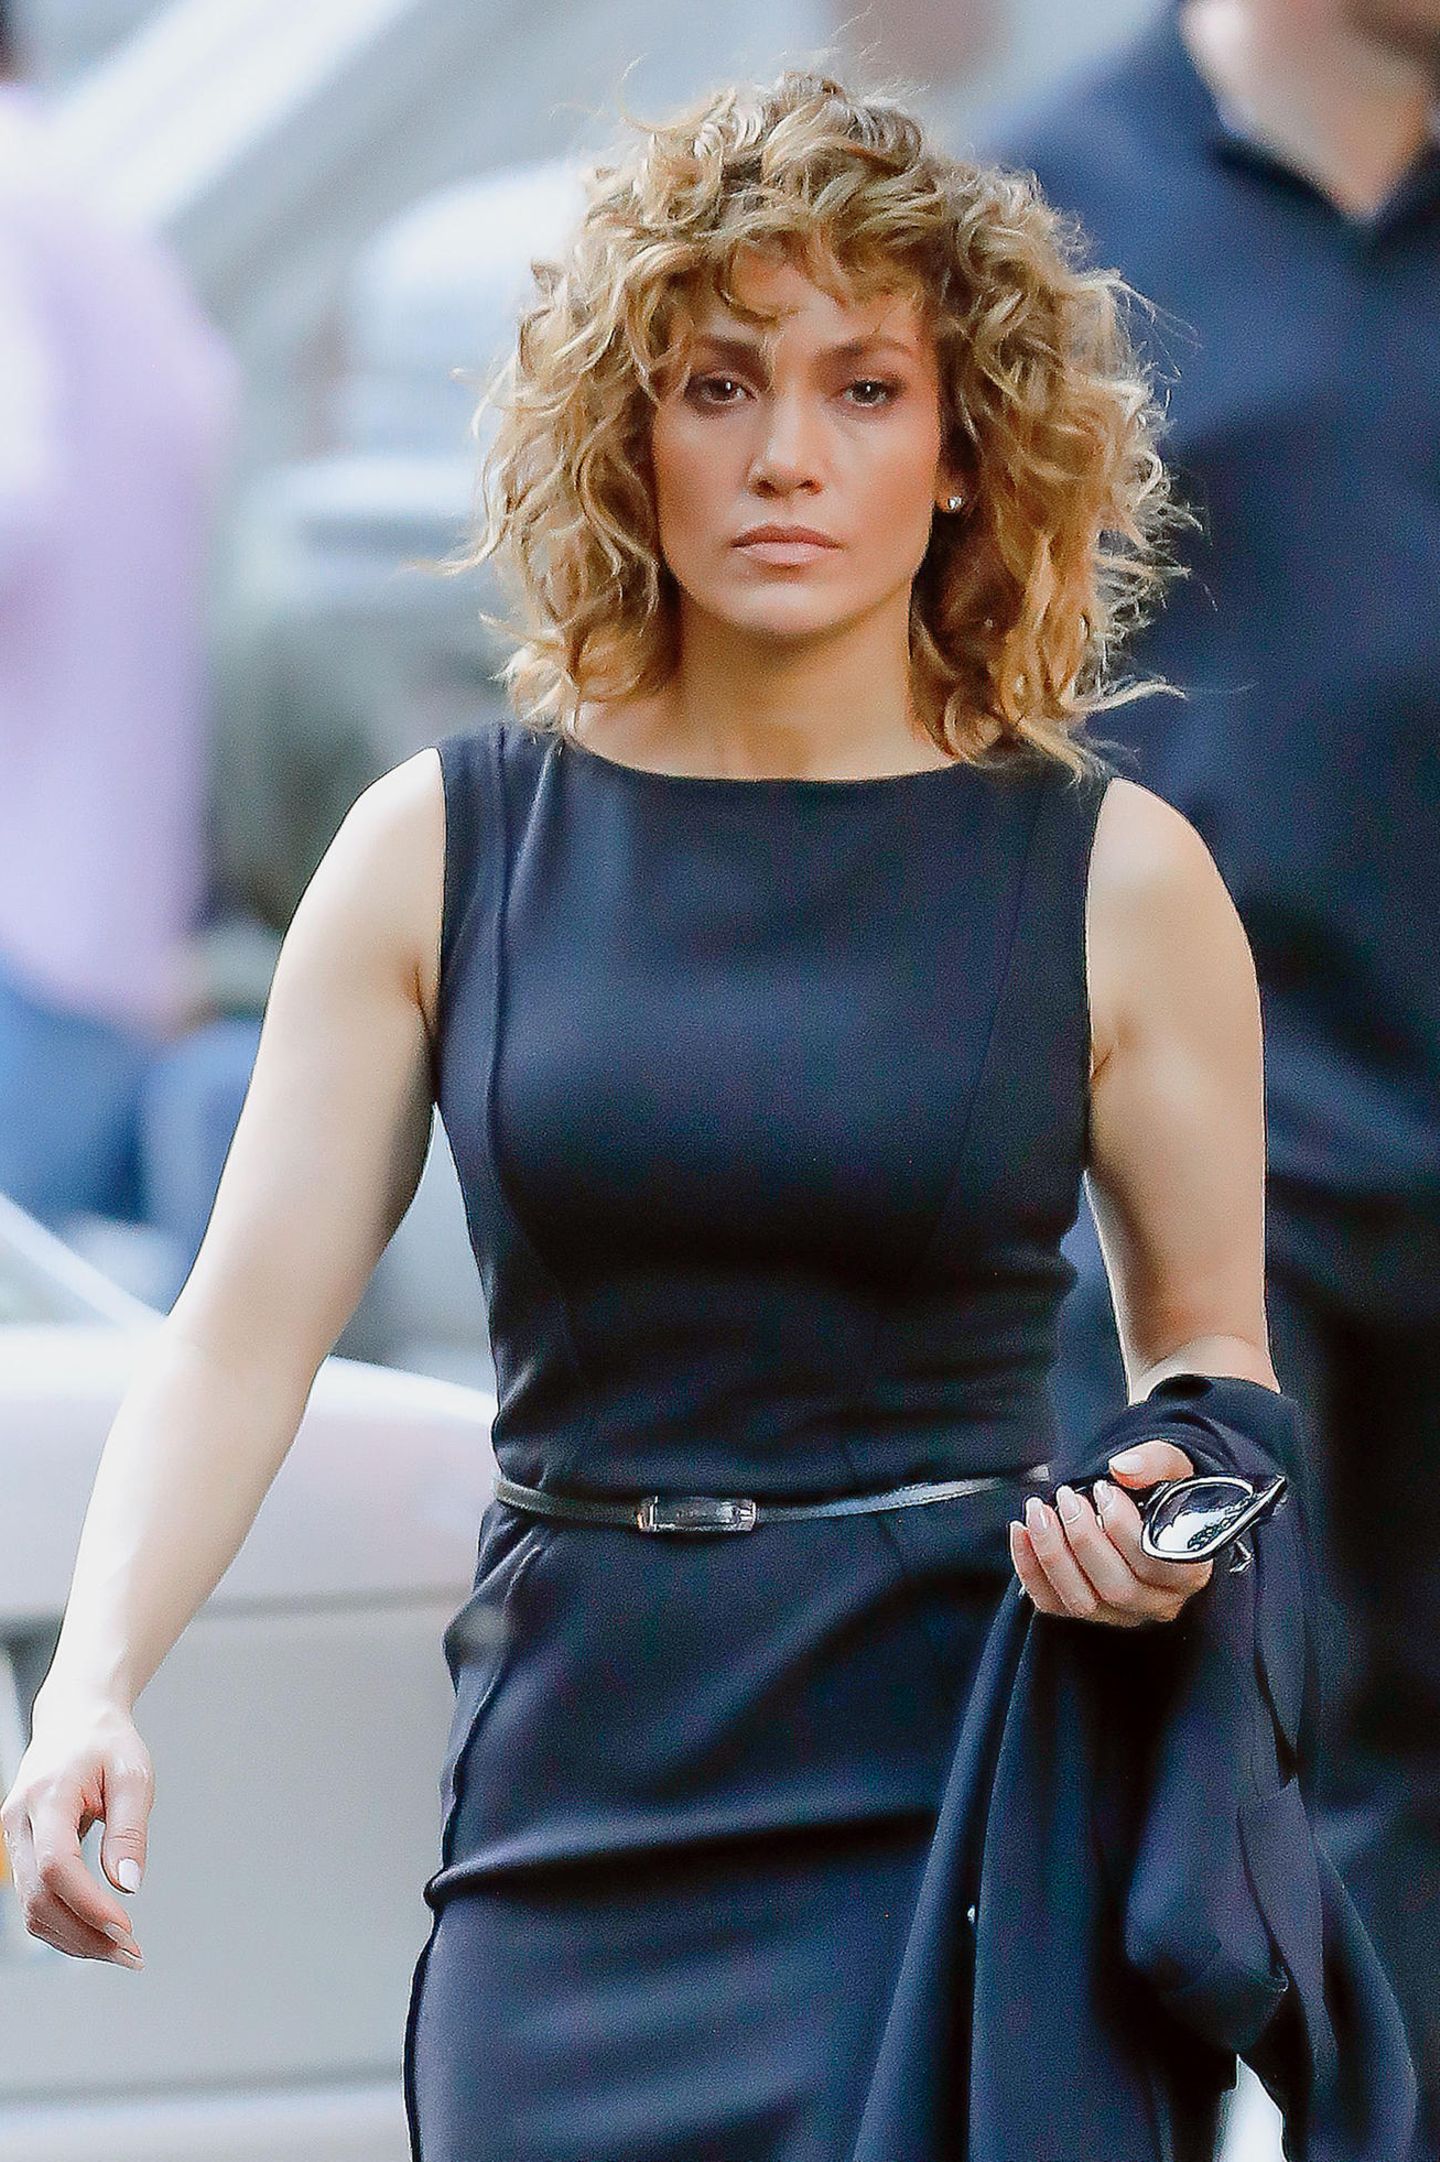 In ihrer Rolle der taffen Polizistin "Harlee Santos" trägt Jennifer Lopez in der Serie "Shades of Blue" ihr Haare in einem welligen, schulterlangen Bob und setzt auf klassische Business-Kleidung. 